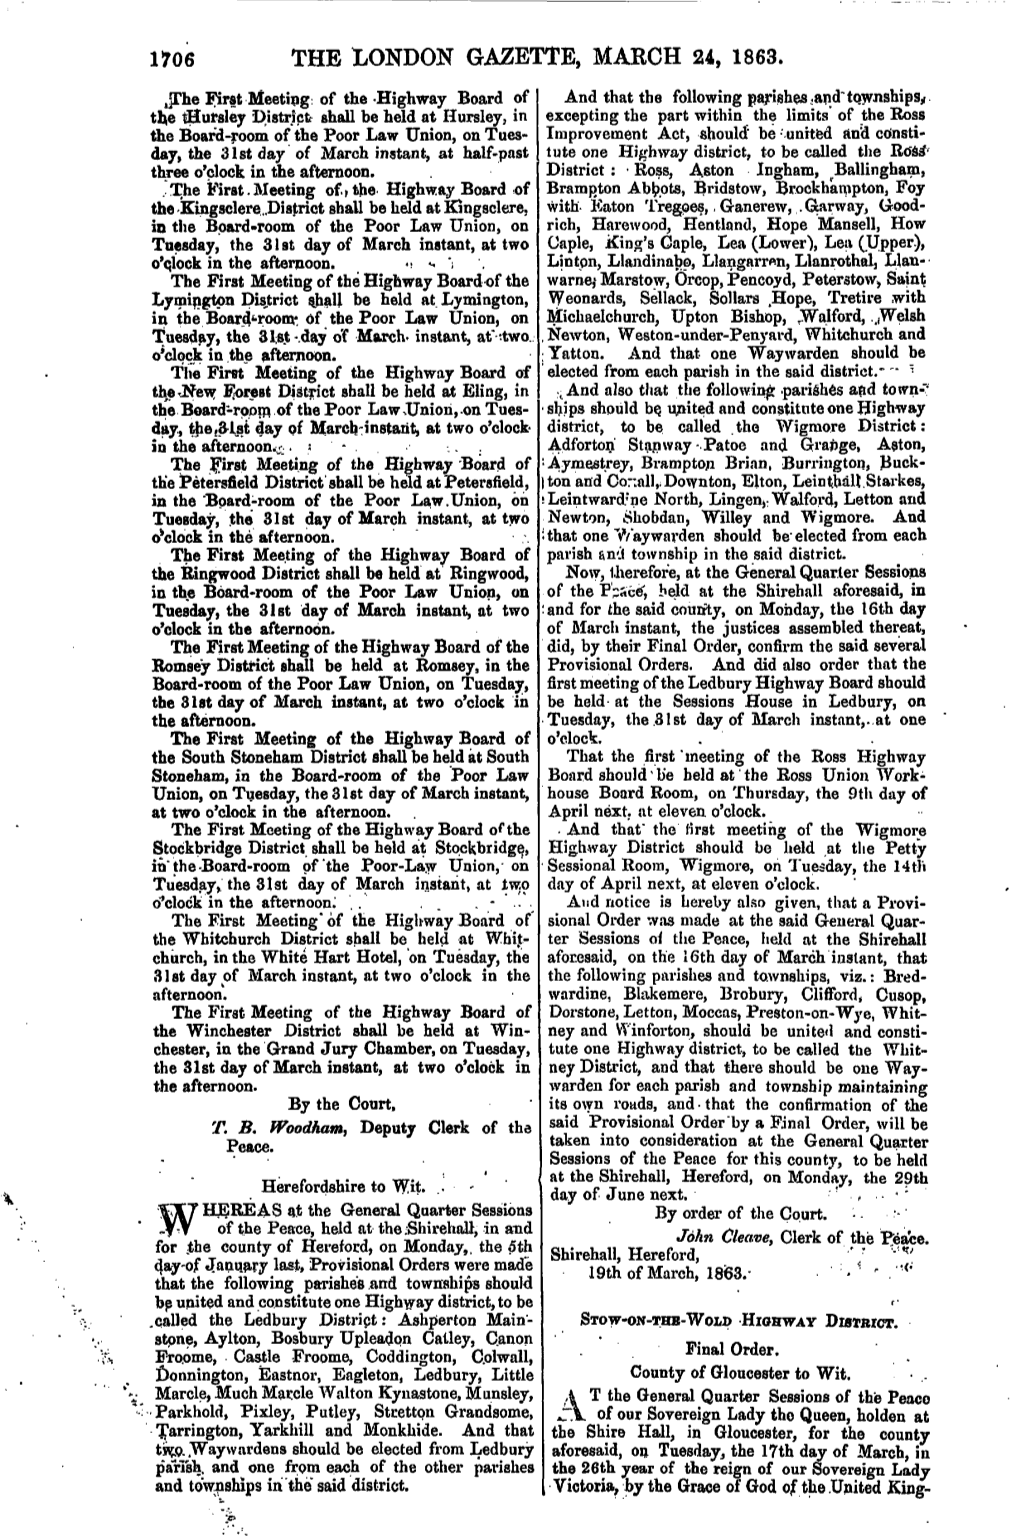 The London Gazette, March 24, 1863